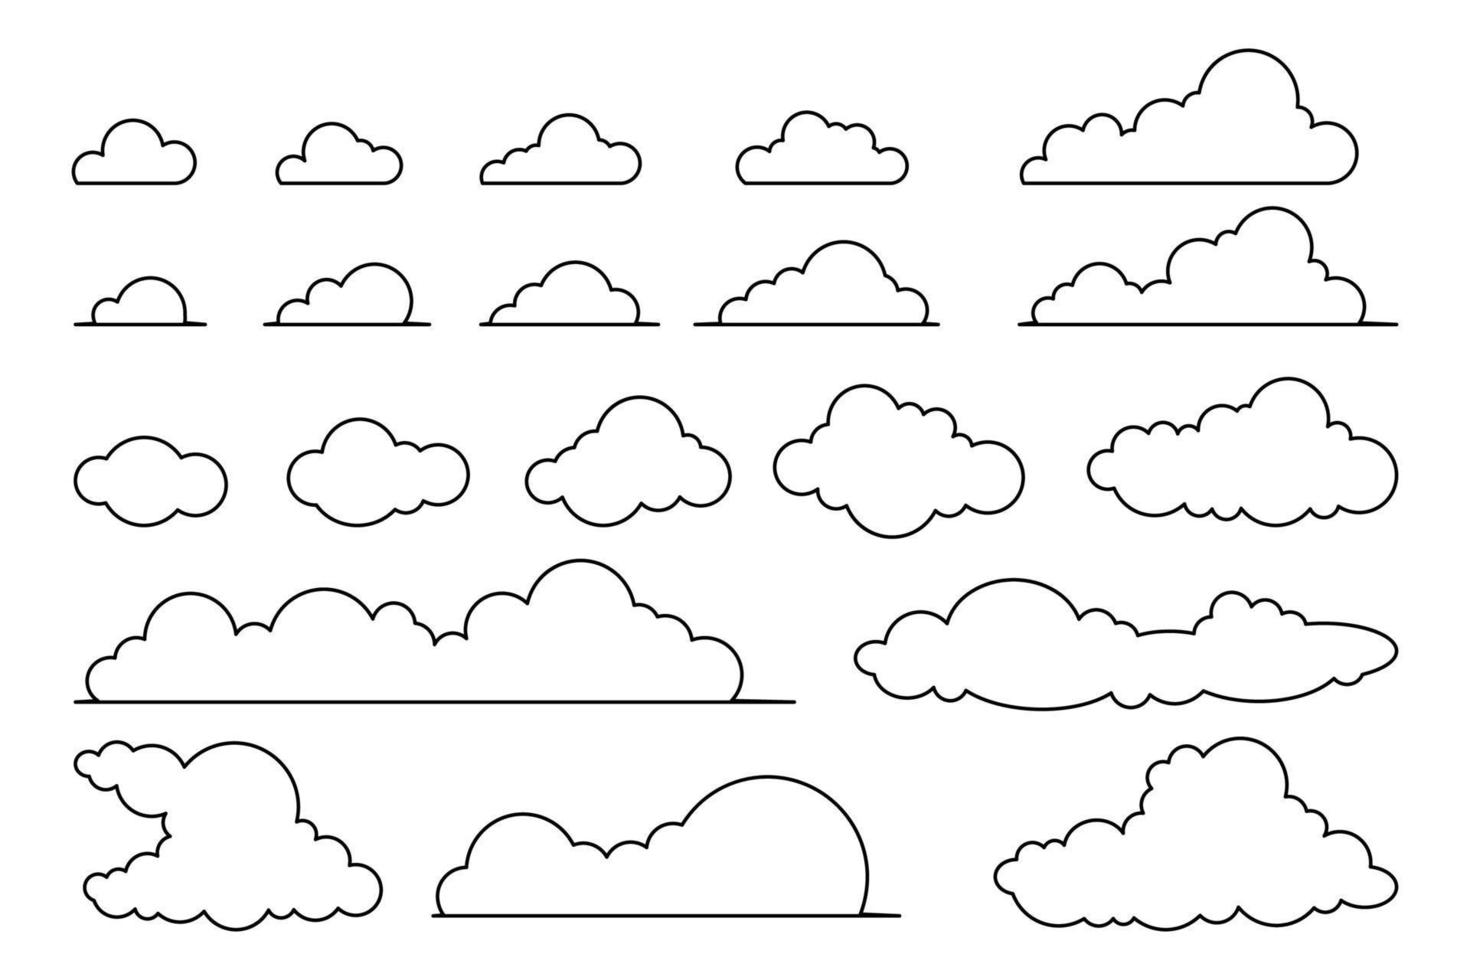 vektor samling av översikt moln av annorlunda former och storlekar. moln symbol för design, hemsida, logotyp, app, ui.